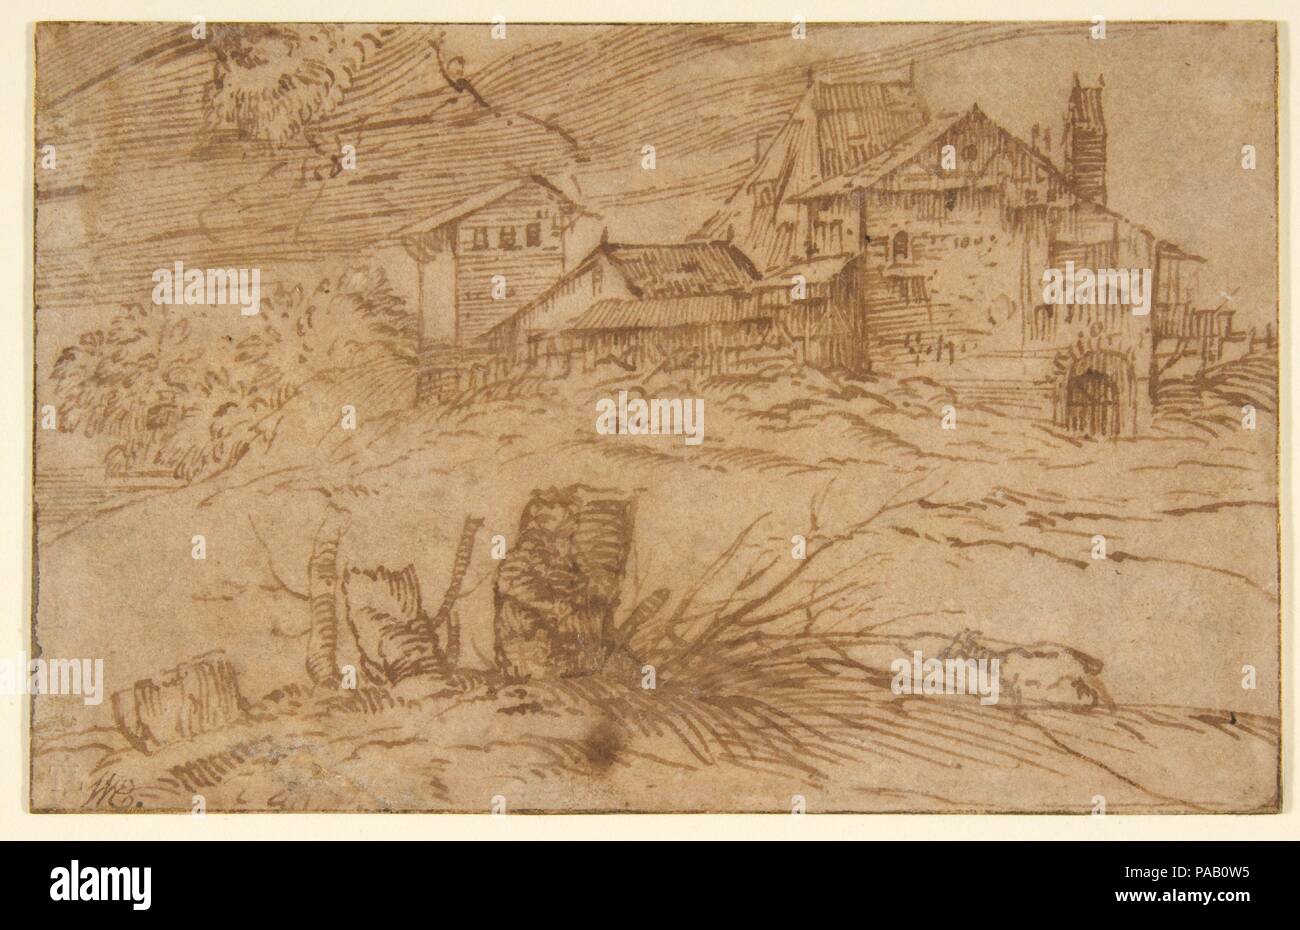 Landschaft mit einer Ziege. Artist: Tizian (Tiziano Vecellio) (Italienisch, Pieve di Cadore Ca. 1485/90?-1576 Venedig). Abmessungen: 3 13/16 x 6 in. (9,7 x 15,3 cm). Datum: 1500-1511. Zeichnungen von Tizian sind äußerst selten, und dieses herrliche Studie ist eine der wenigen Seiten, die plausibel, die ihm zugeschrieben werden kann. Obwohl es getrimmt wurde (das Fragment in der oberen linken hat auf verschiedene Art und Weise interpretiert worden, aber sicher stellt die untere Hälfte der Kopf eines bärtigen Mannes), die Skizze ist ein schönes Beispiel für Tizians kraftvoll und bewegend Zeichenstil. Die poetischen Behandlung der Landschaft spiegelt t Stockfoto